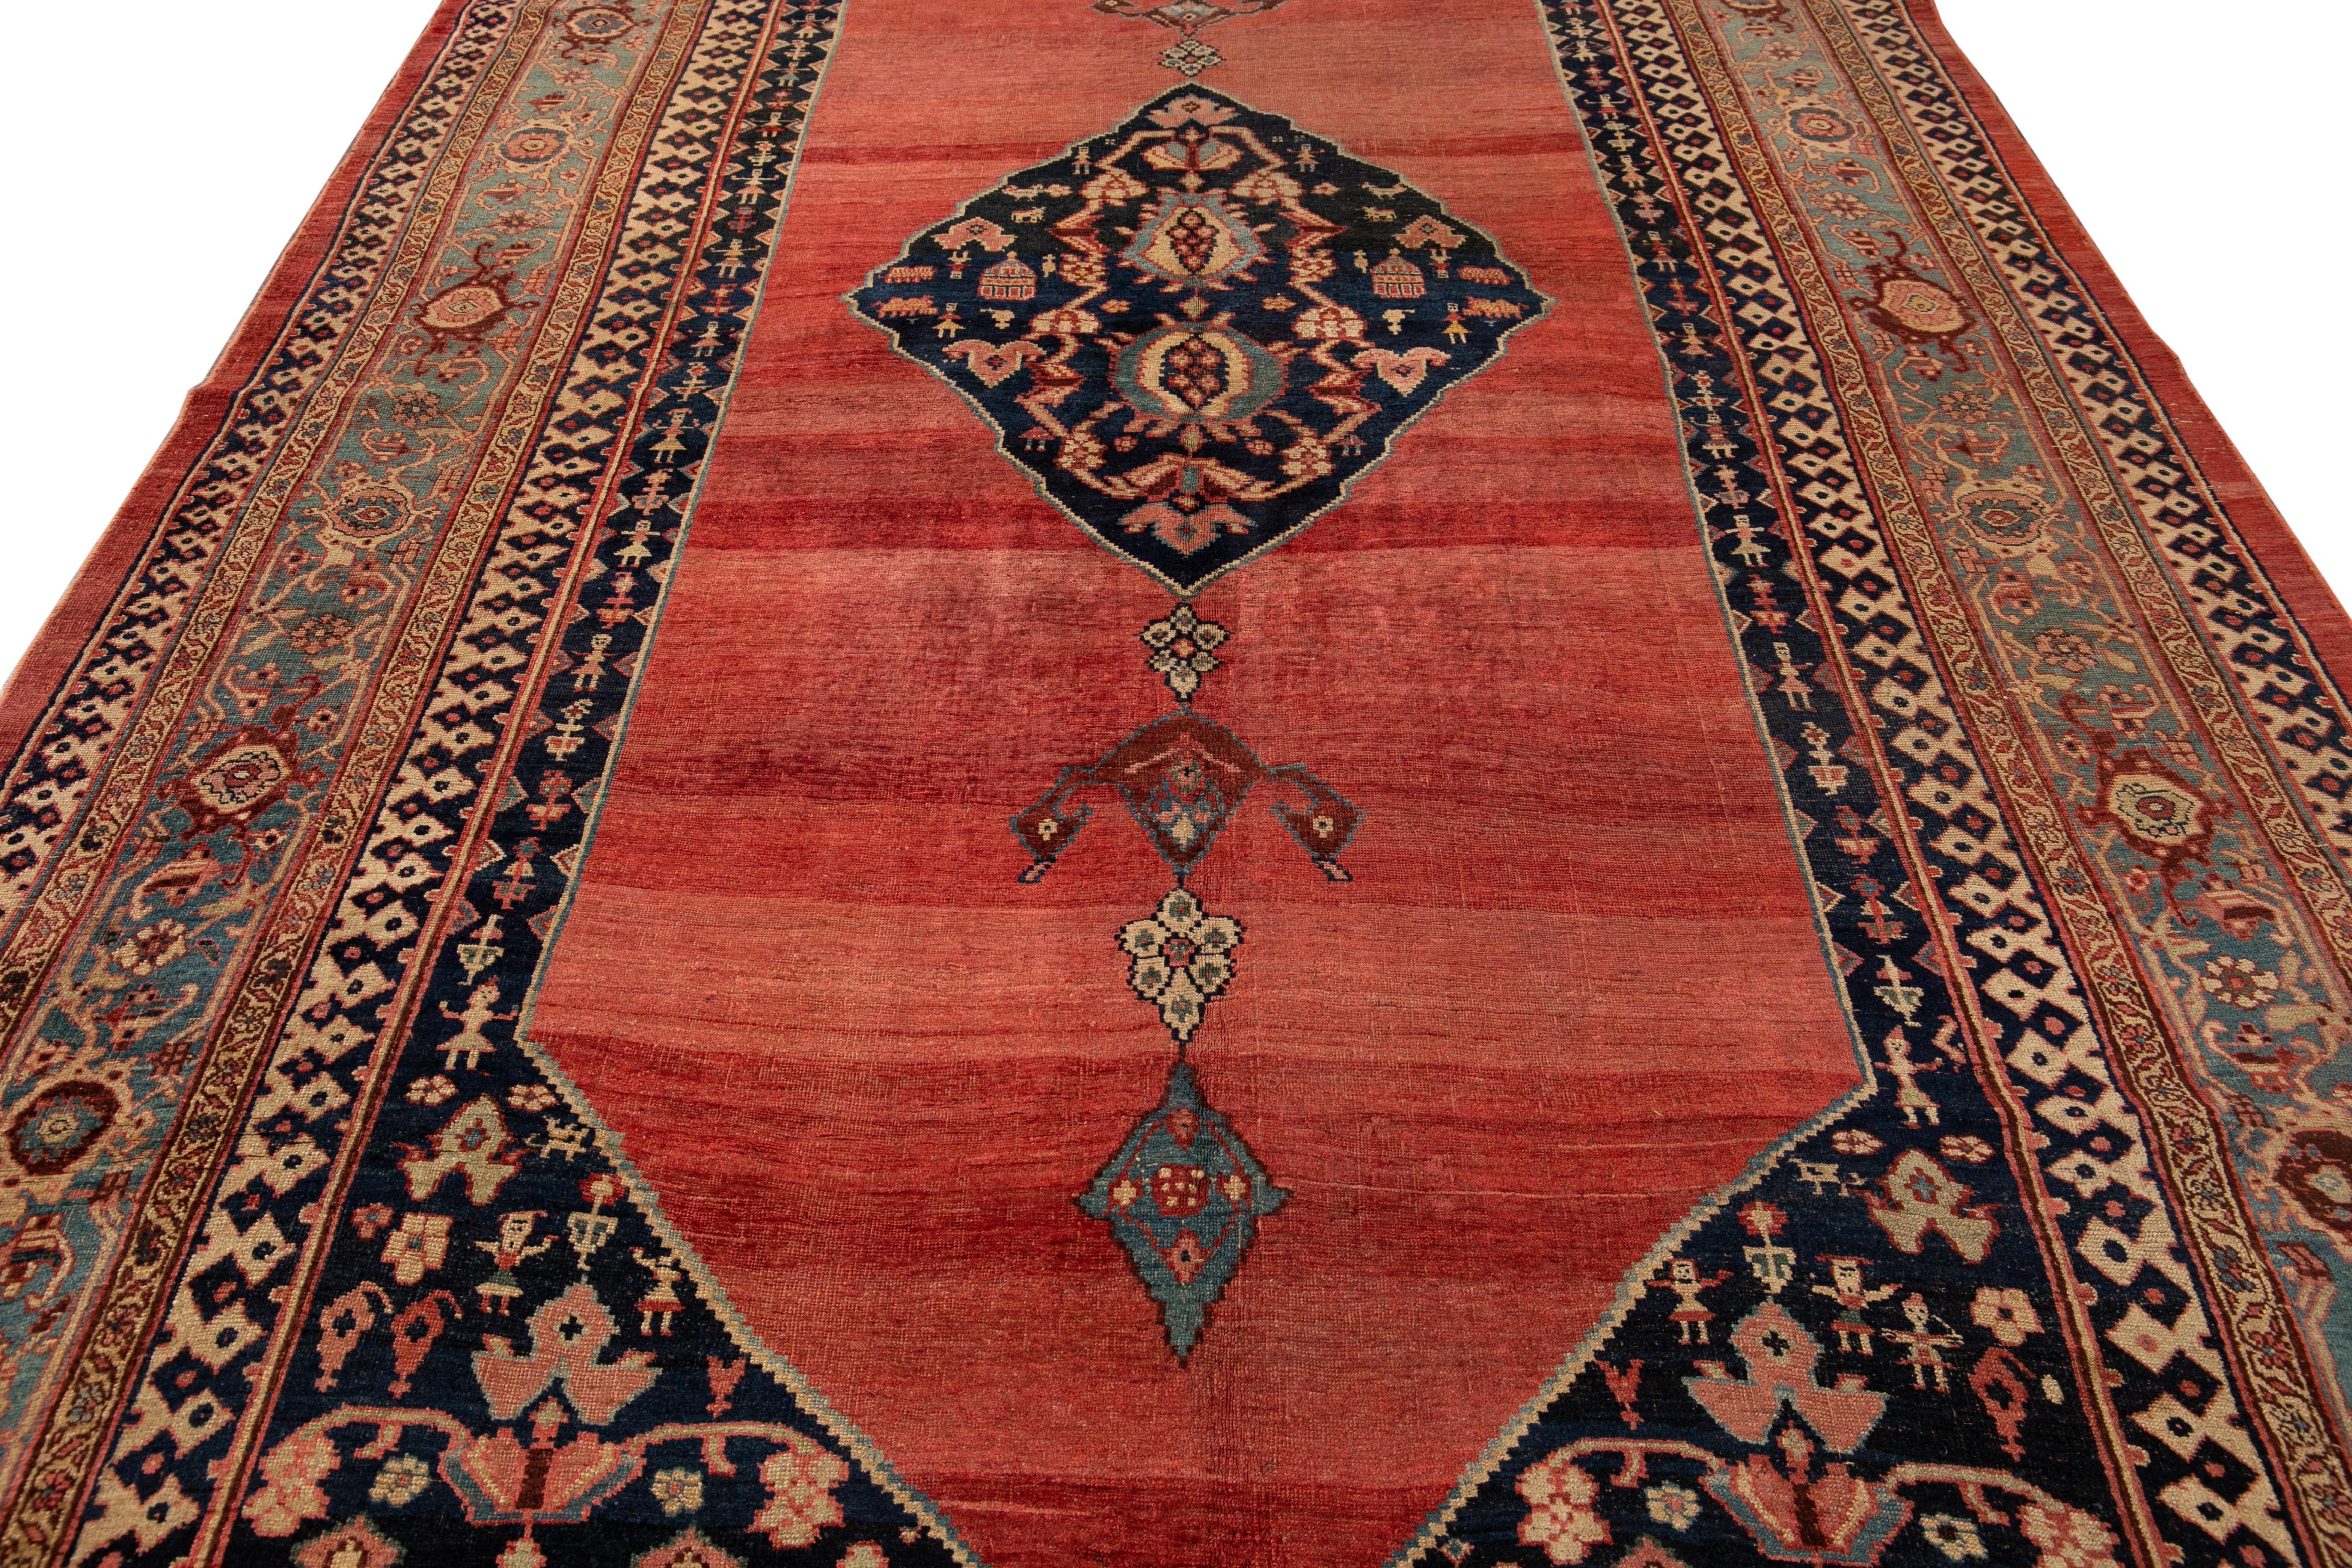 Magnifique tapis ancien Bidjar en laine nouée à la main avec un champ de couleur rouge-rouille. Ce tapis persan a un cadre bleu avec des accents multicolores dans un magnifique motif floral en médaillon.

Ce tapis mesure 7'10